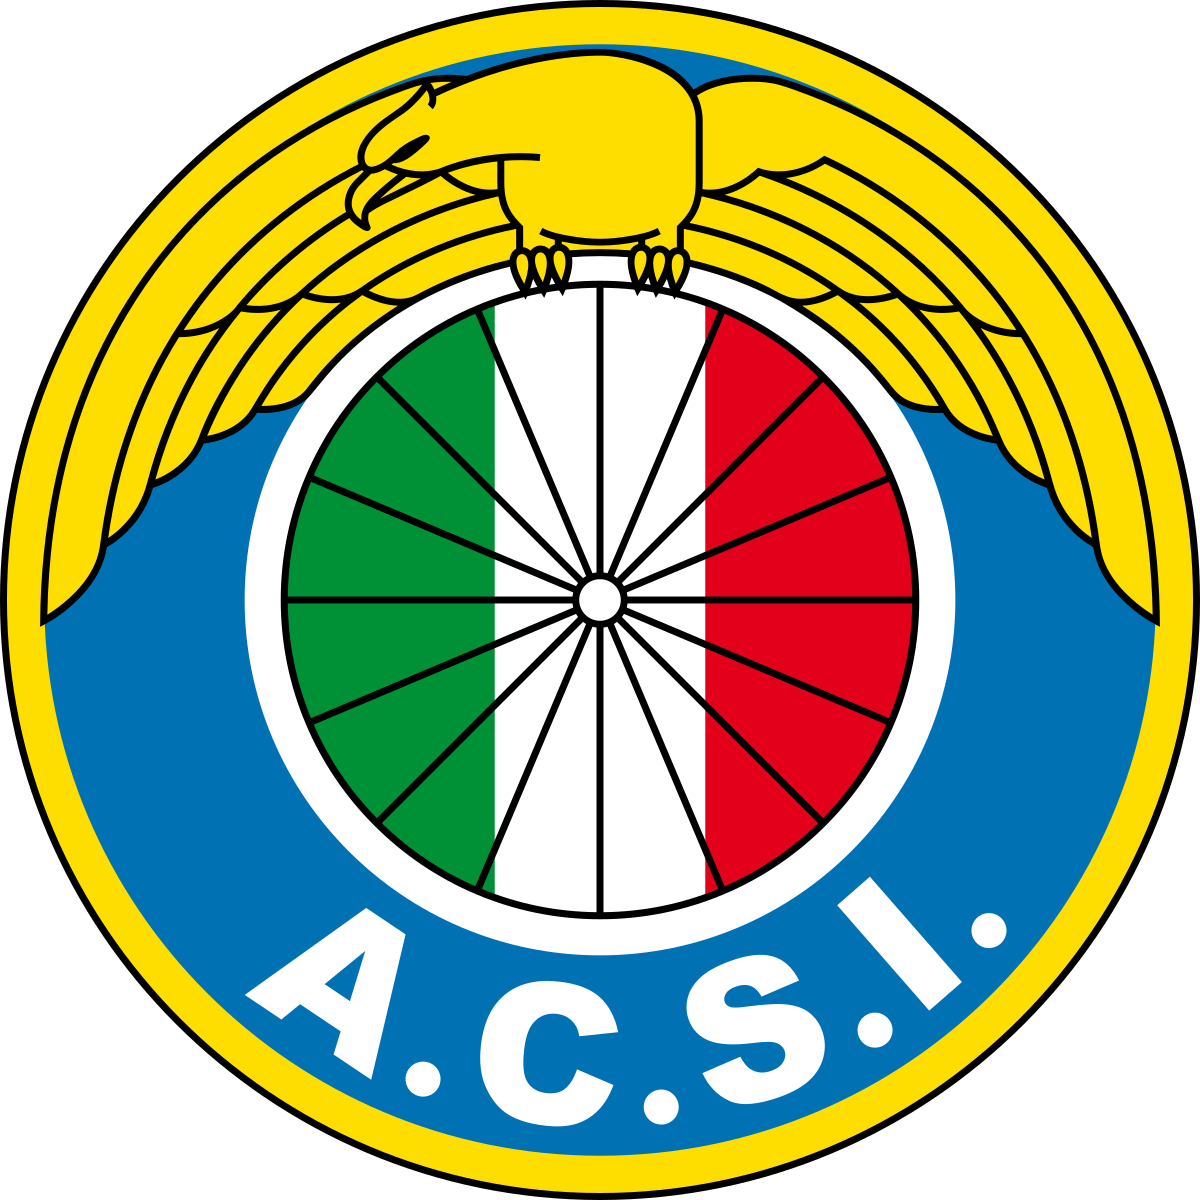 Audax Italiano - Wikipedia